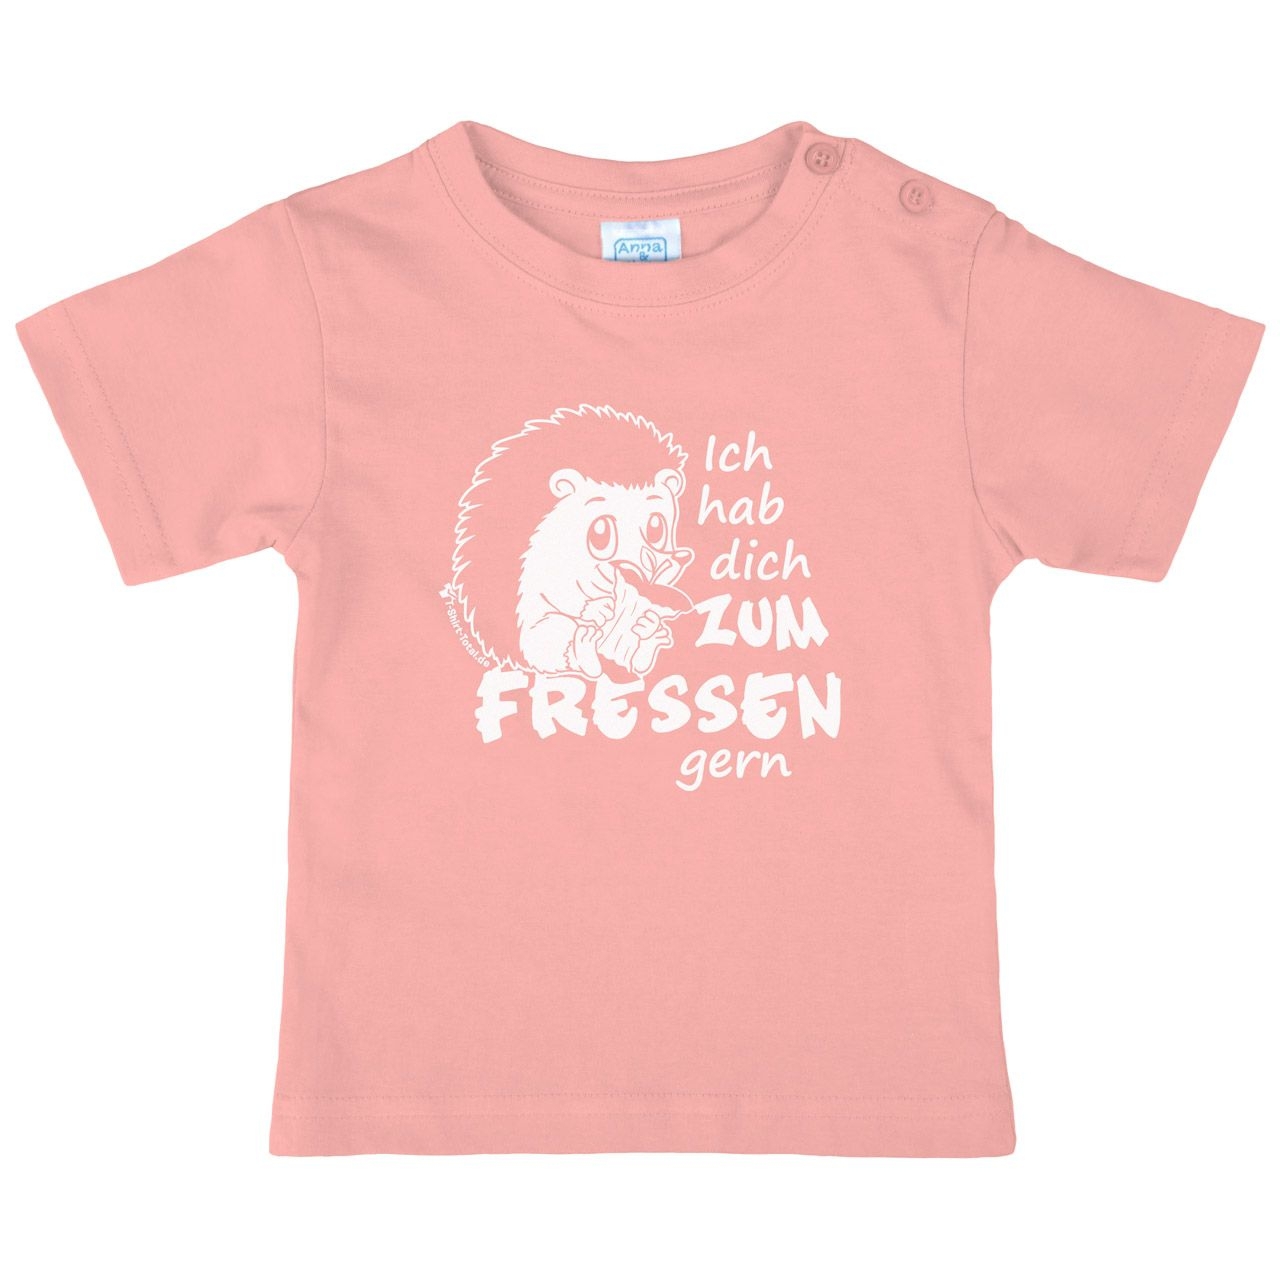 Zum fressen gern Kinder T-Shirt rosa 80 / 86